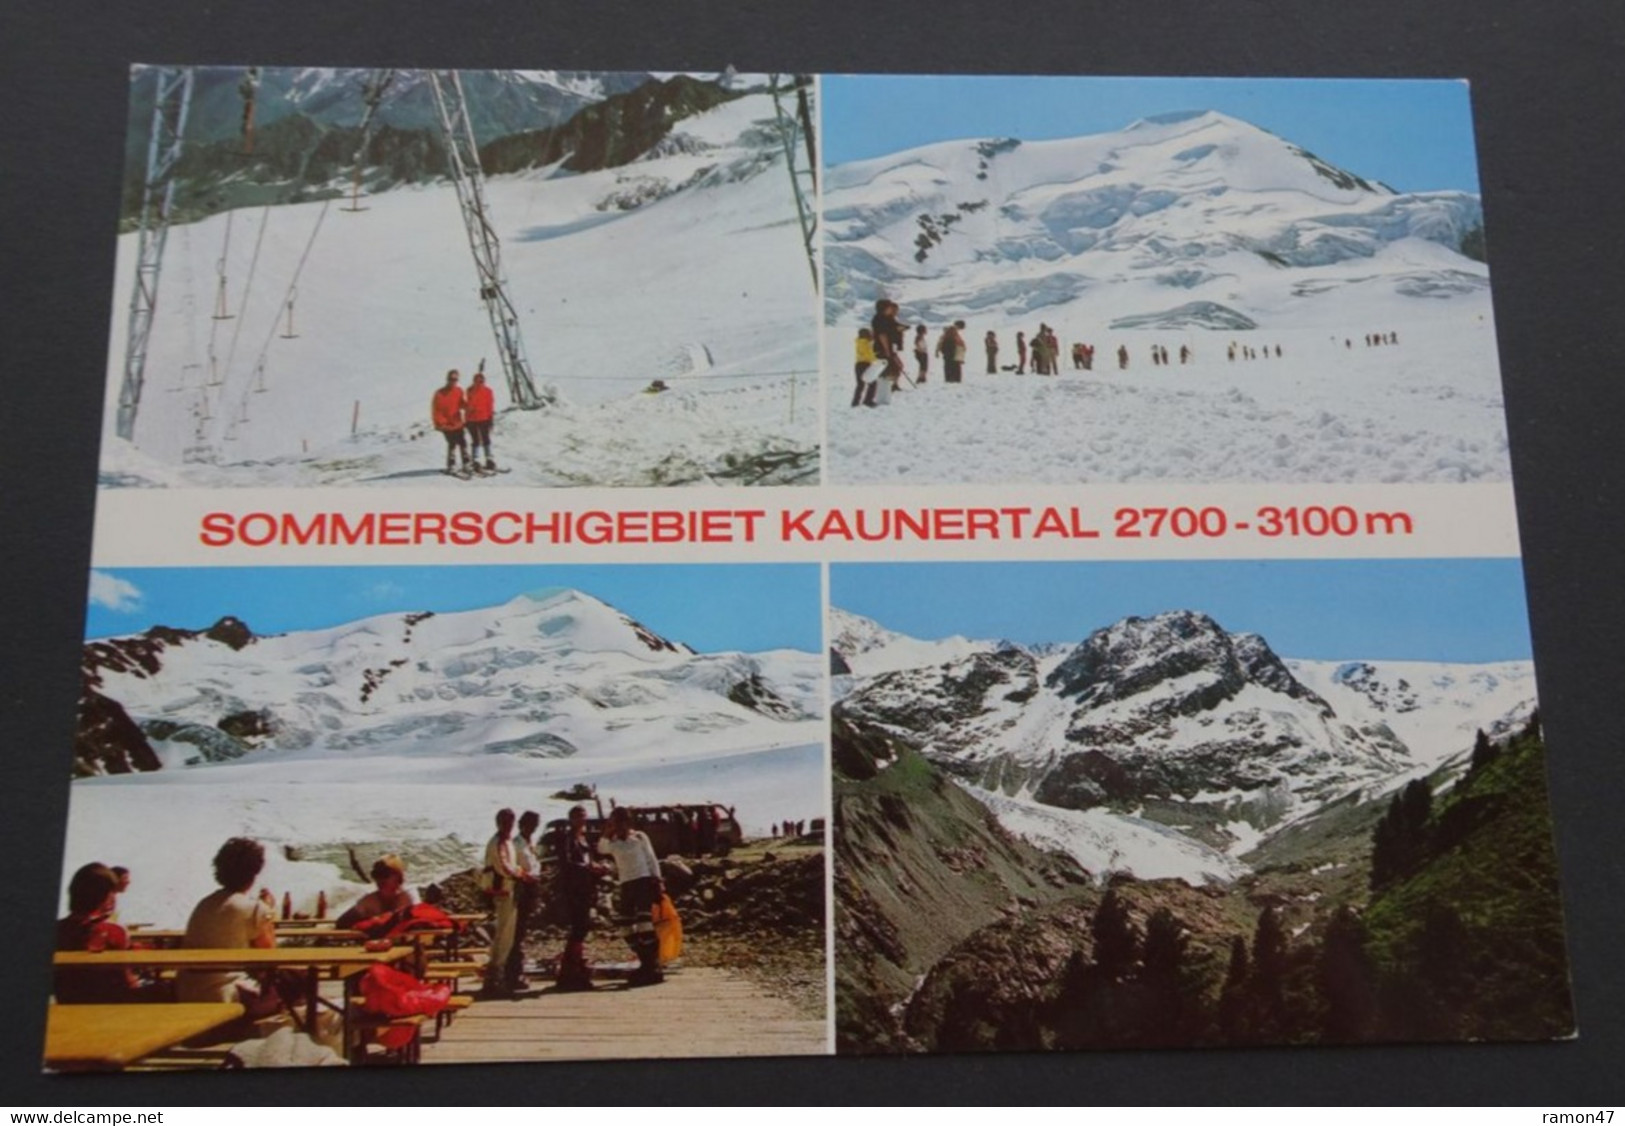 Sommerschigebiet Kaunertal - Rudolf Mathis, Landeck - # 3553 - Kaunertal